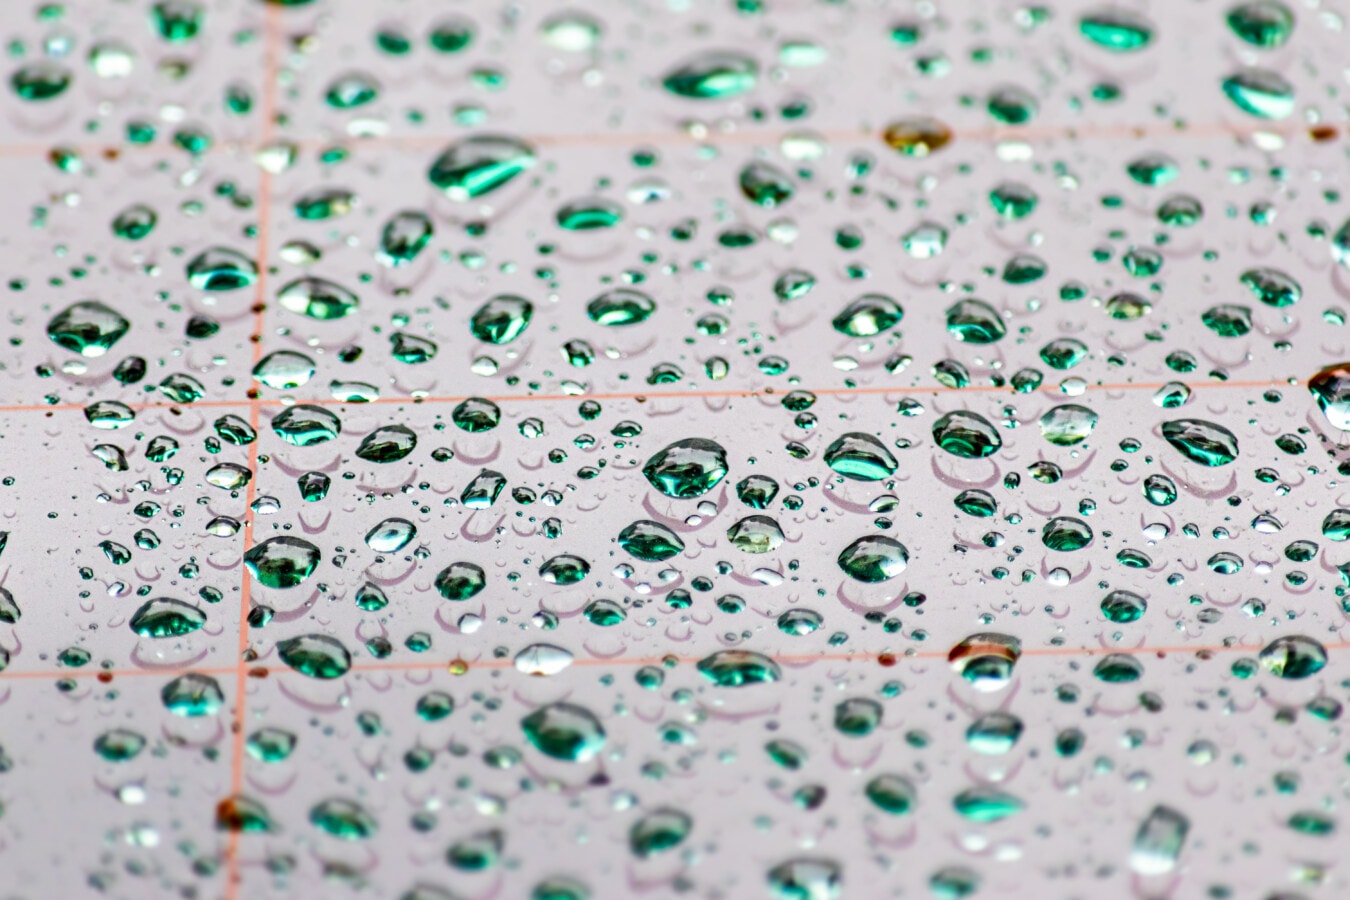 raindrop, moisture, condensation, droplets, close-up, details, glass, liquid, wet, turquoise